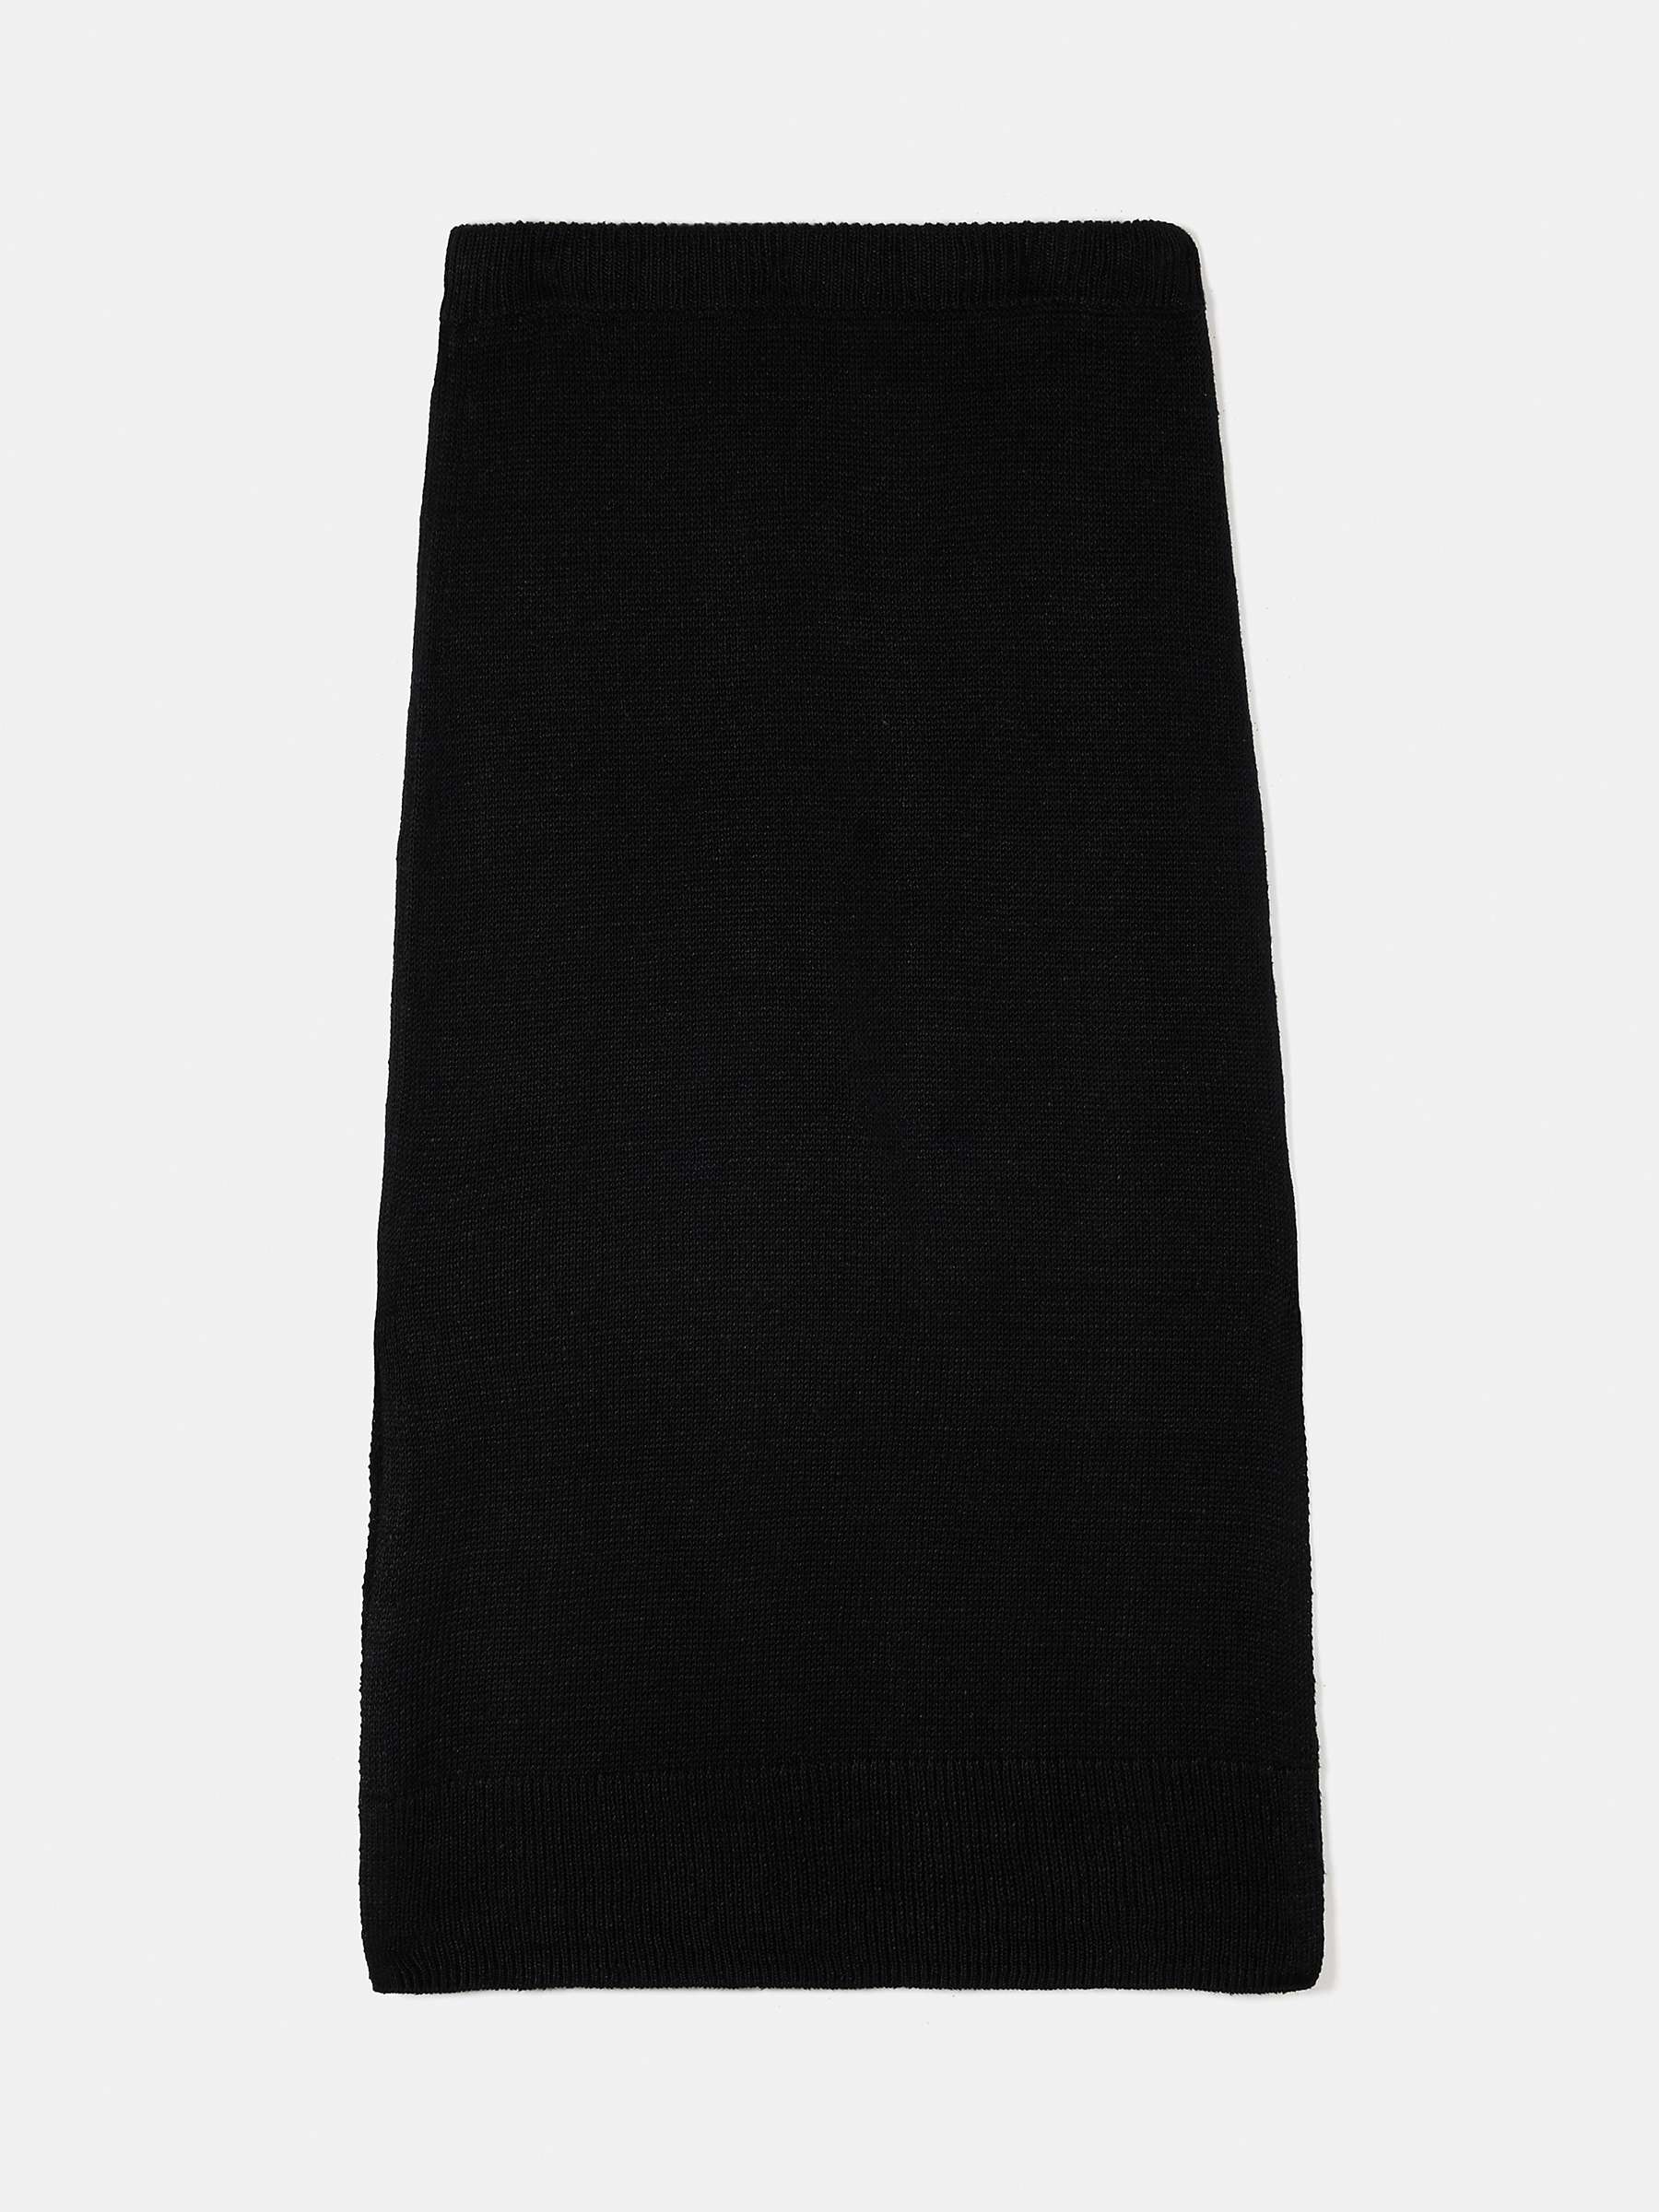 Jigsaw Linen Slub Knitted Skirt, Black at John Lewis & Partners